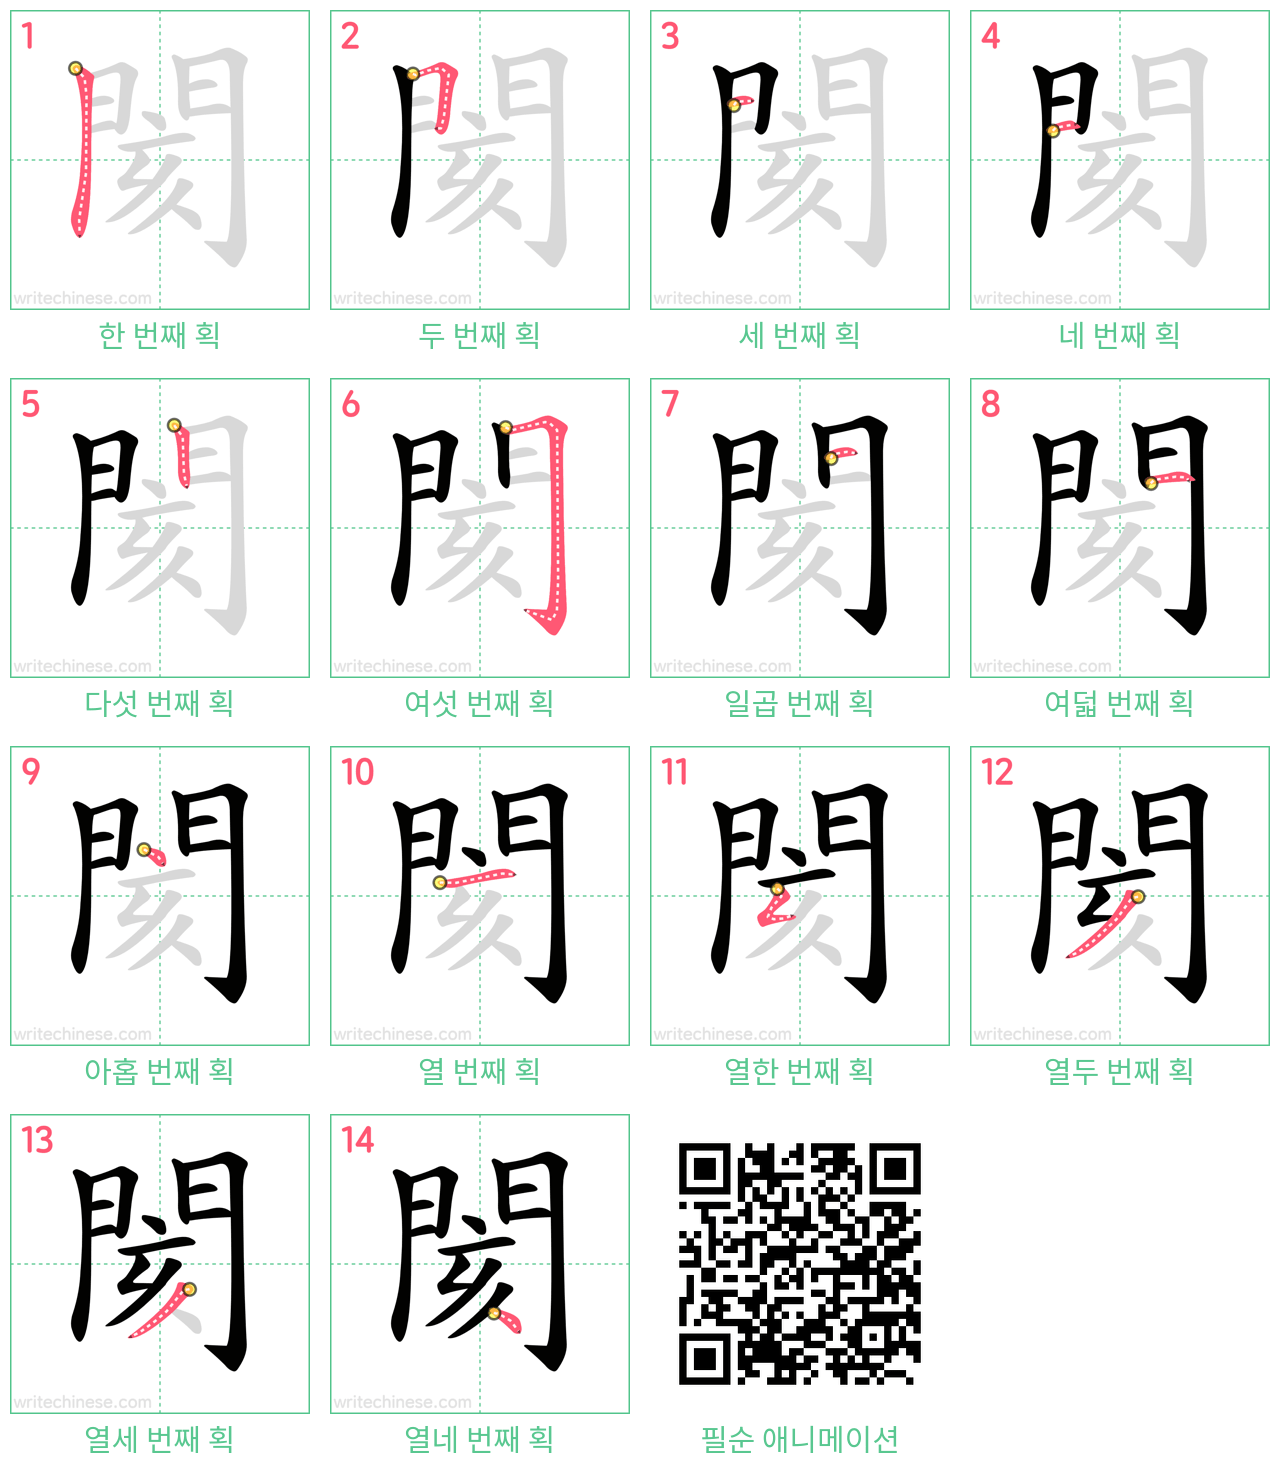 閡 step-by-step stroke order diagrams